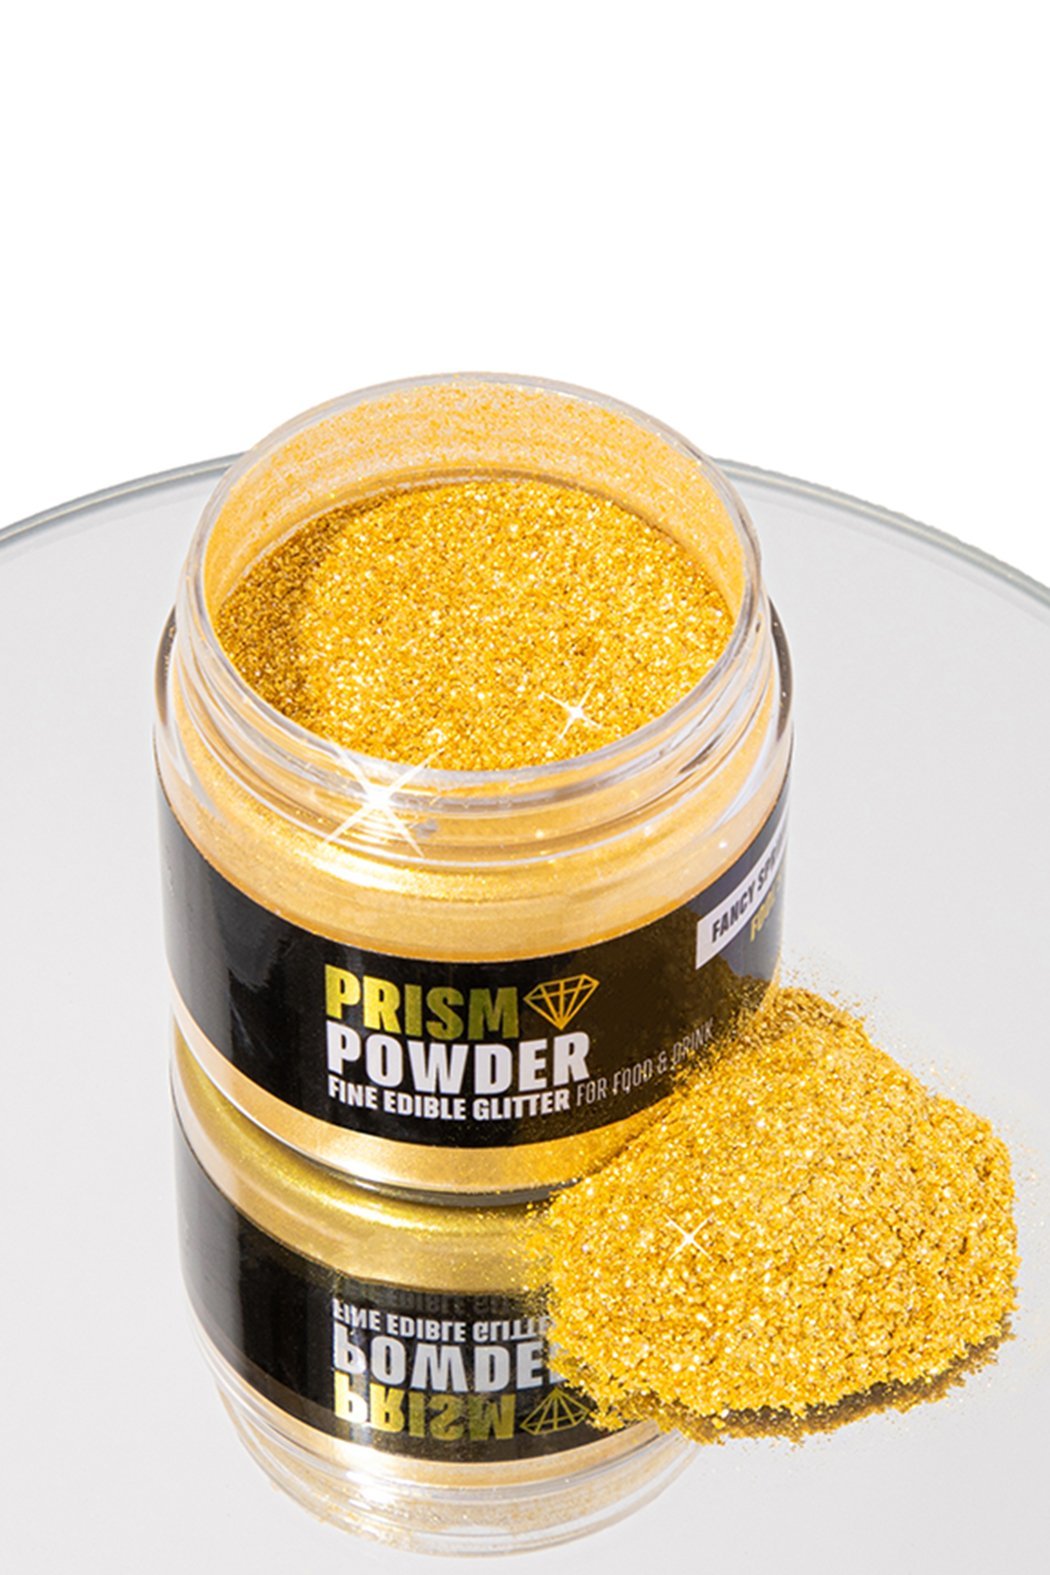 Edible Glitter Gold Powder Multi-color Cake Decoration Glitter